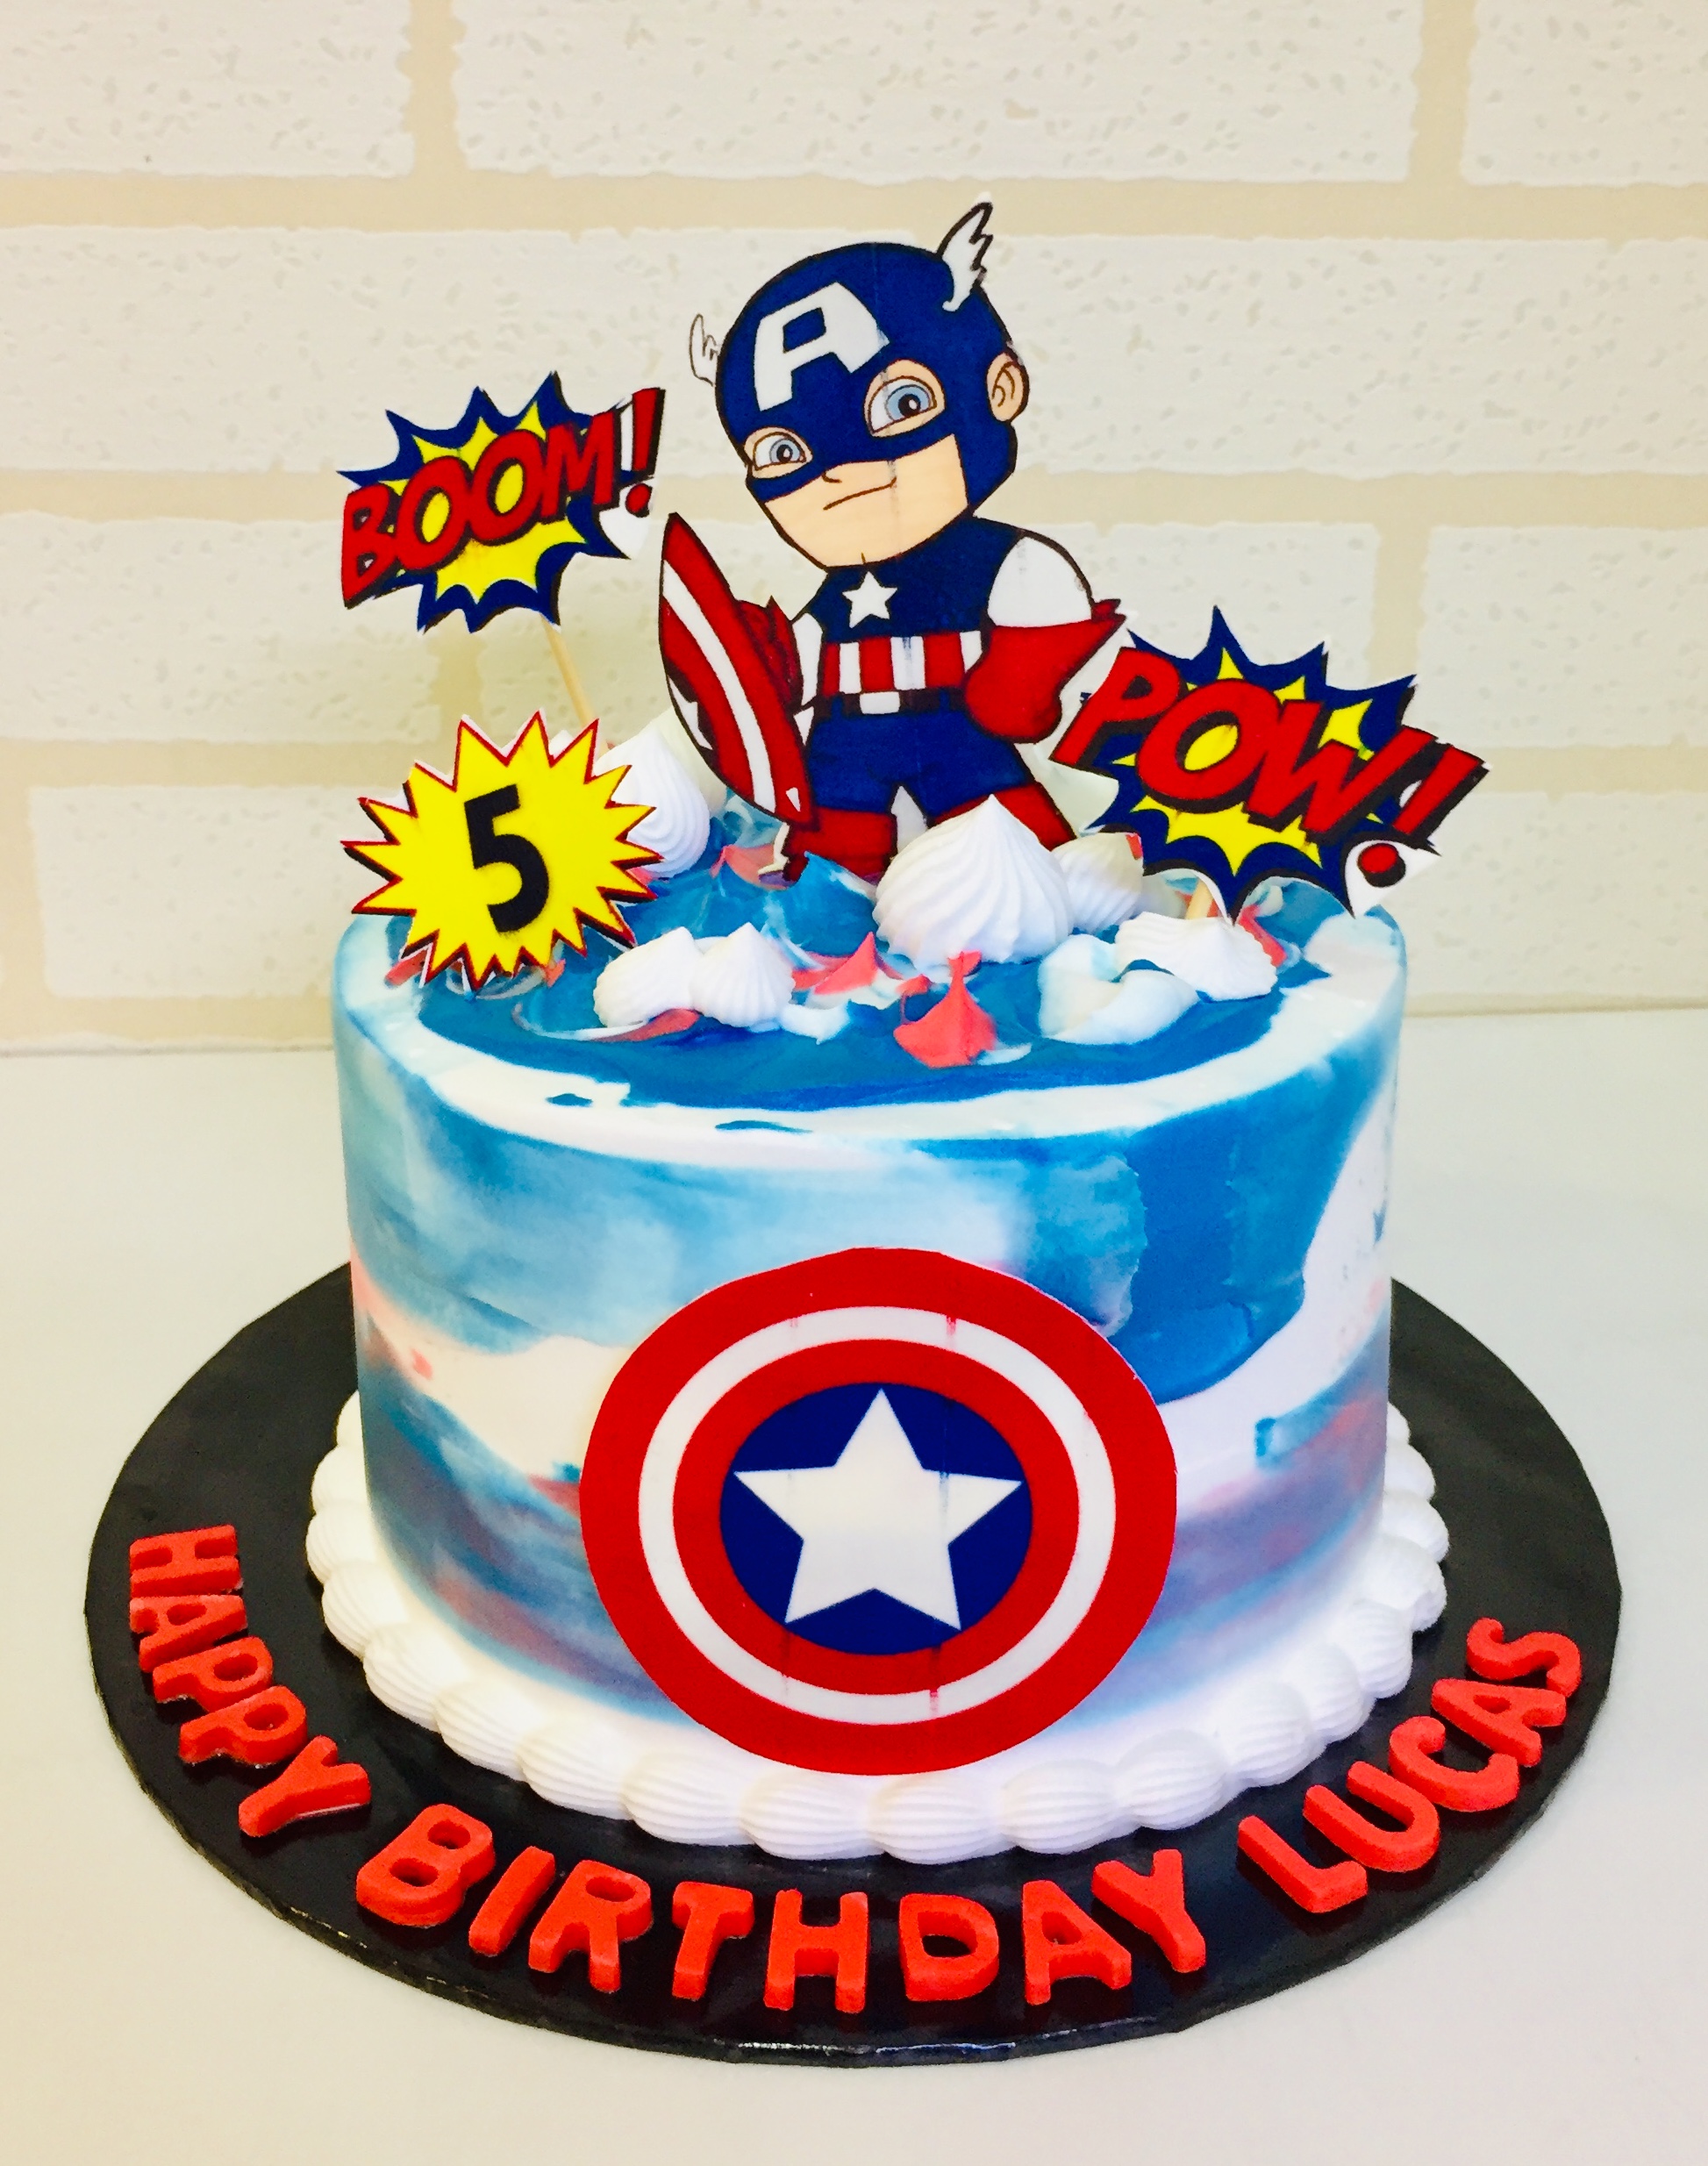 Captain America Theme Designer Cake - Avon Bakers